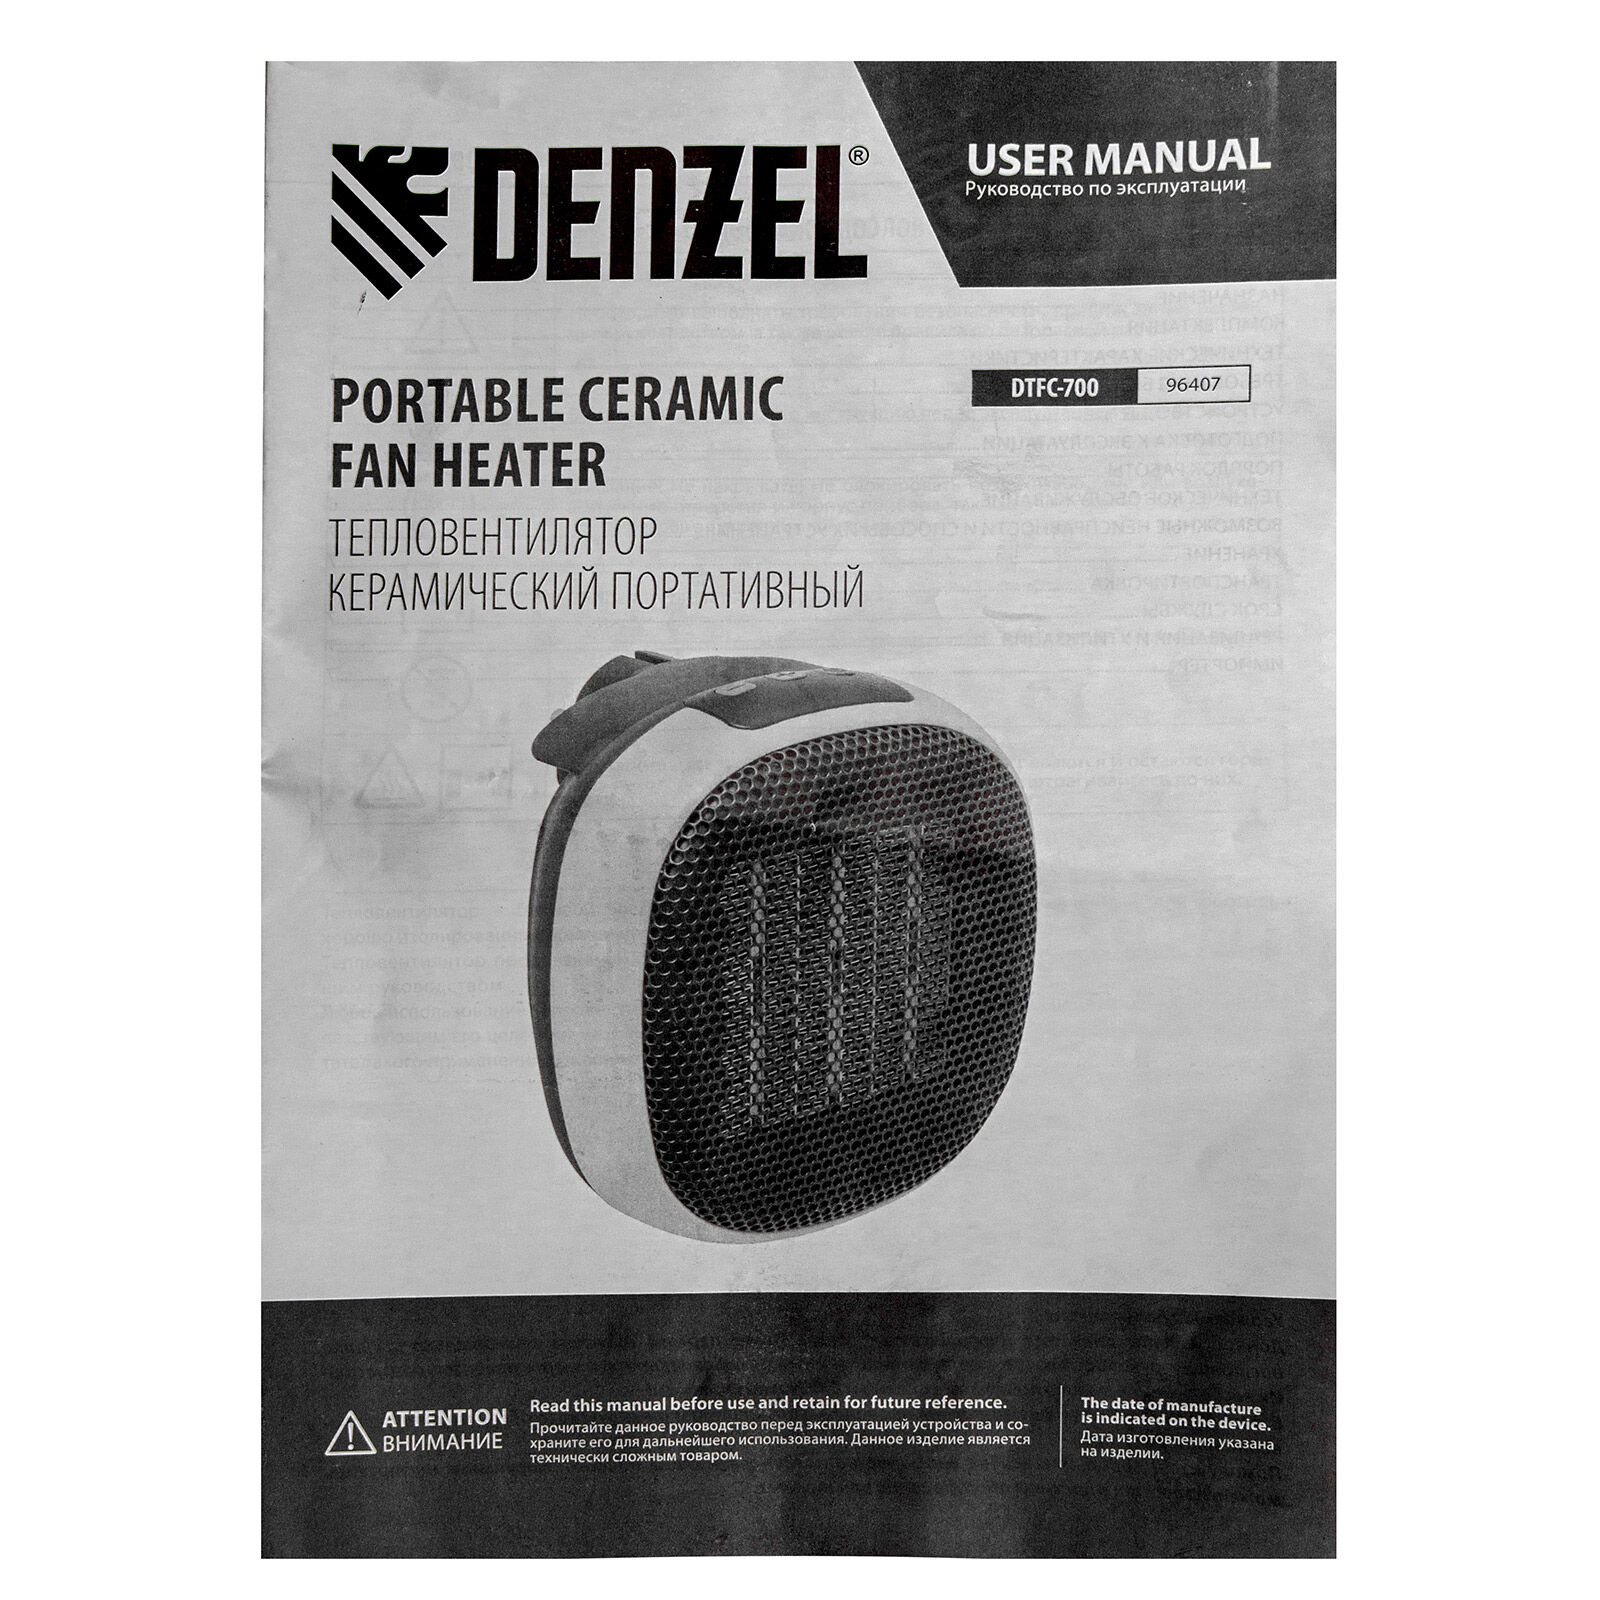 Тепловентилятор портативный керамический DTFC-700, 3 реж. вентилятор, нагрев 700 Вт Denzel 14